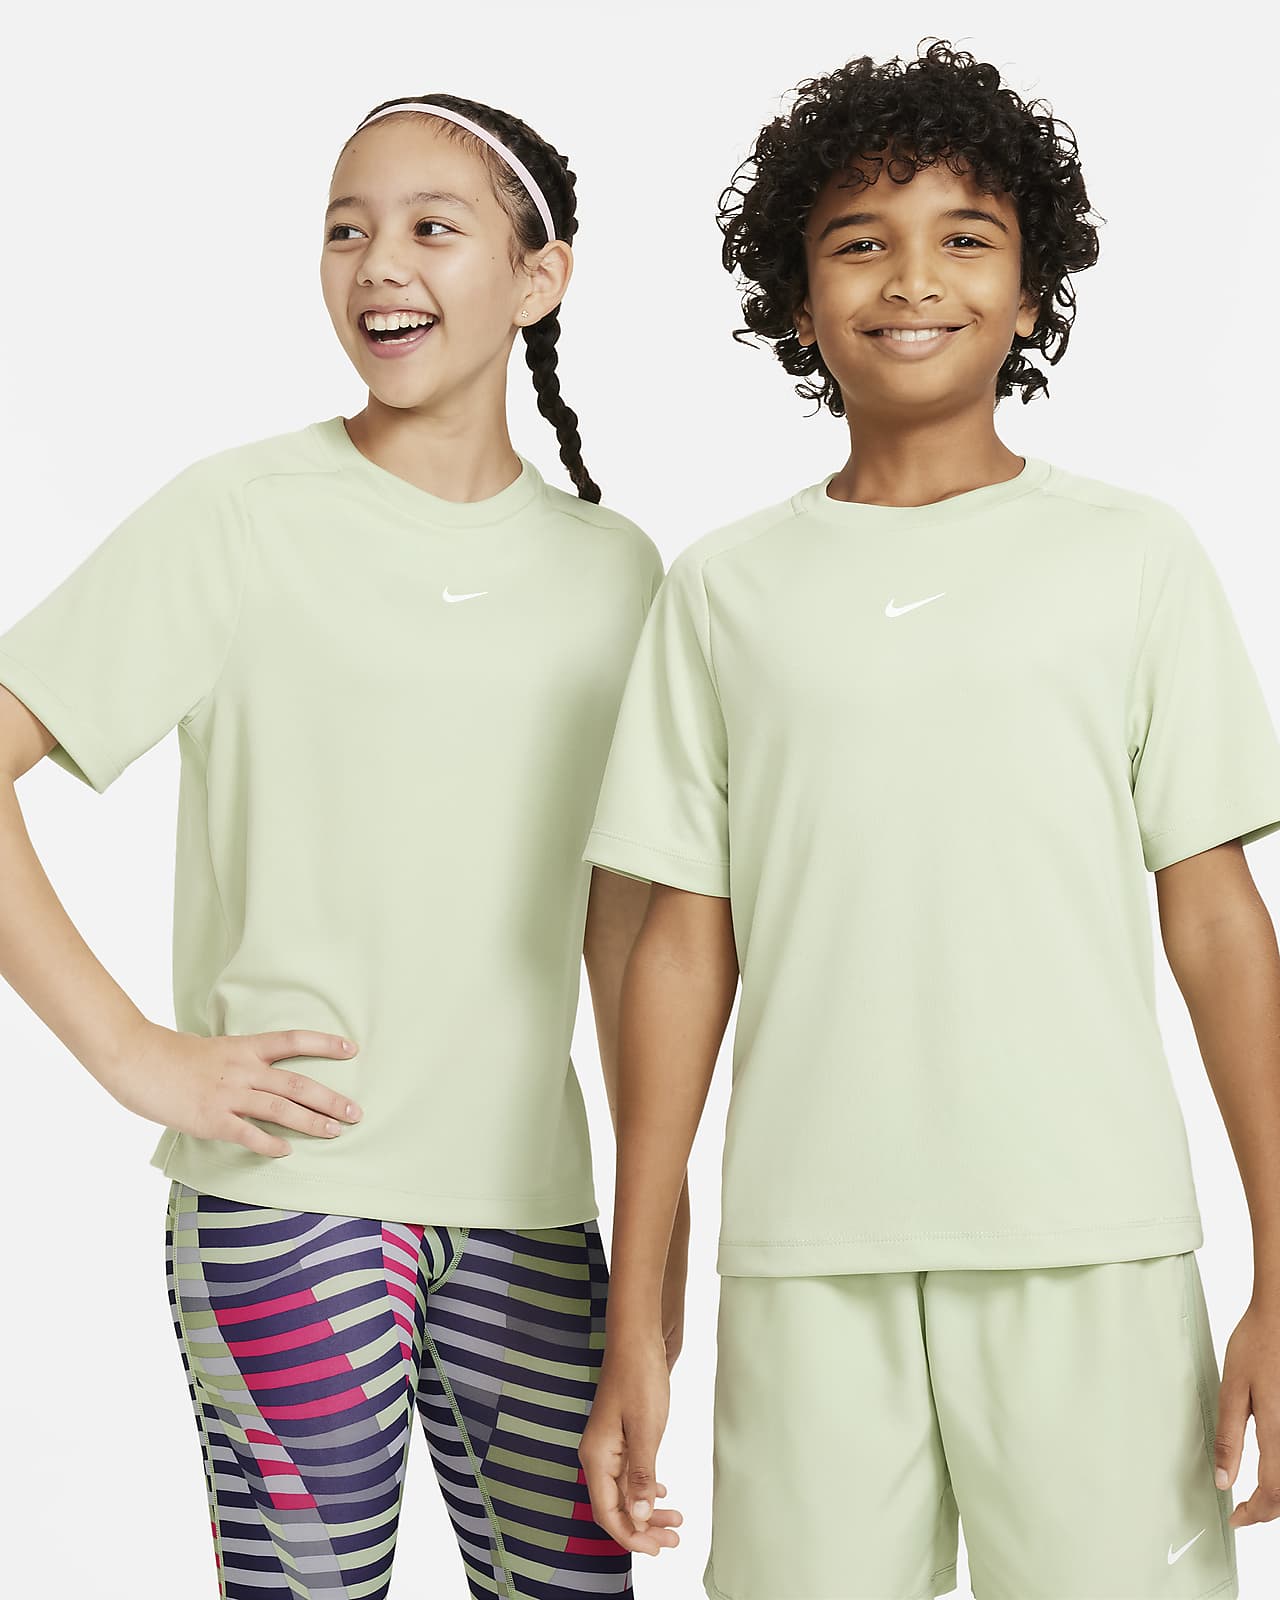 Playera de entrenamiento con gráfico Dri-FIT Nike Multi para niño talla grande